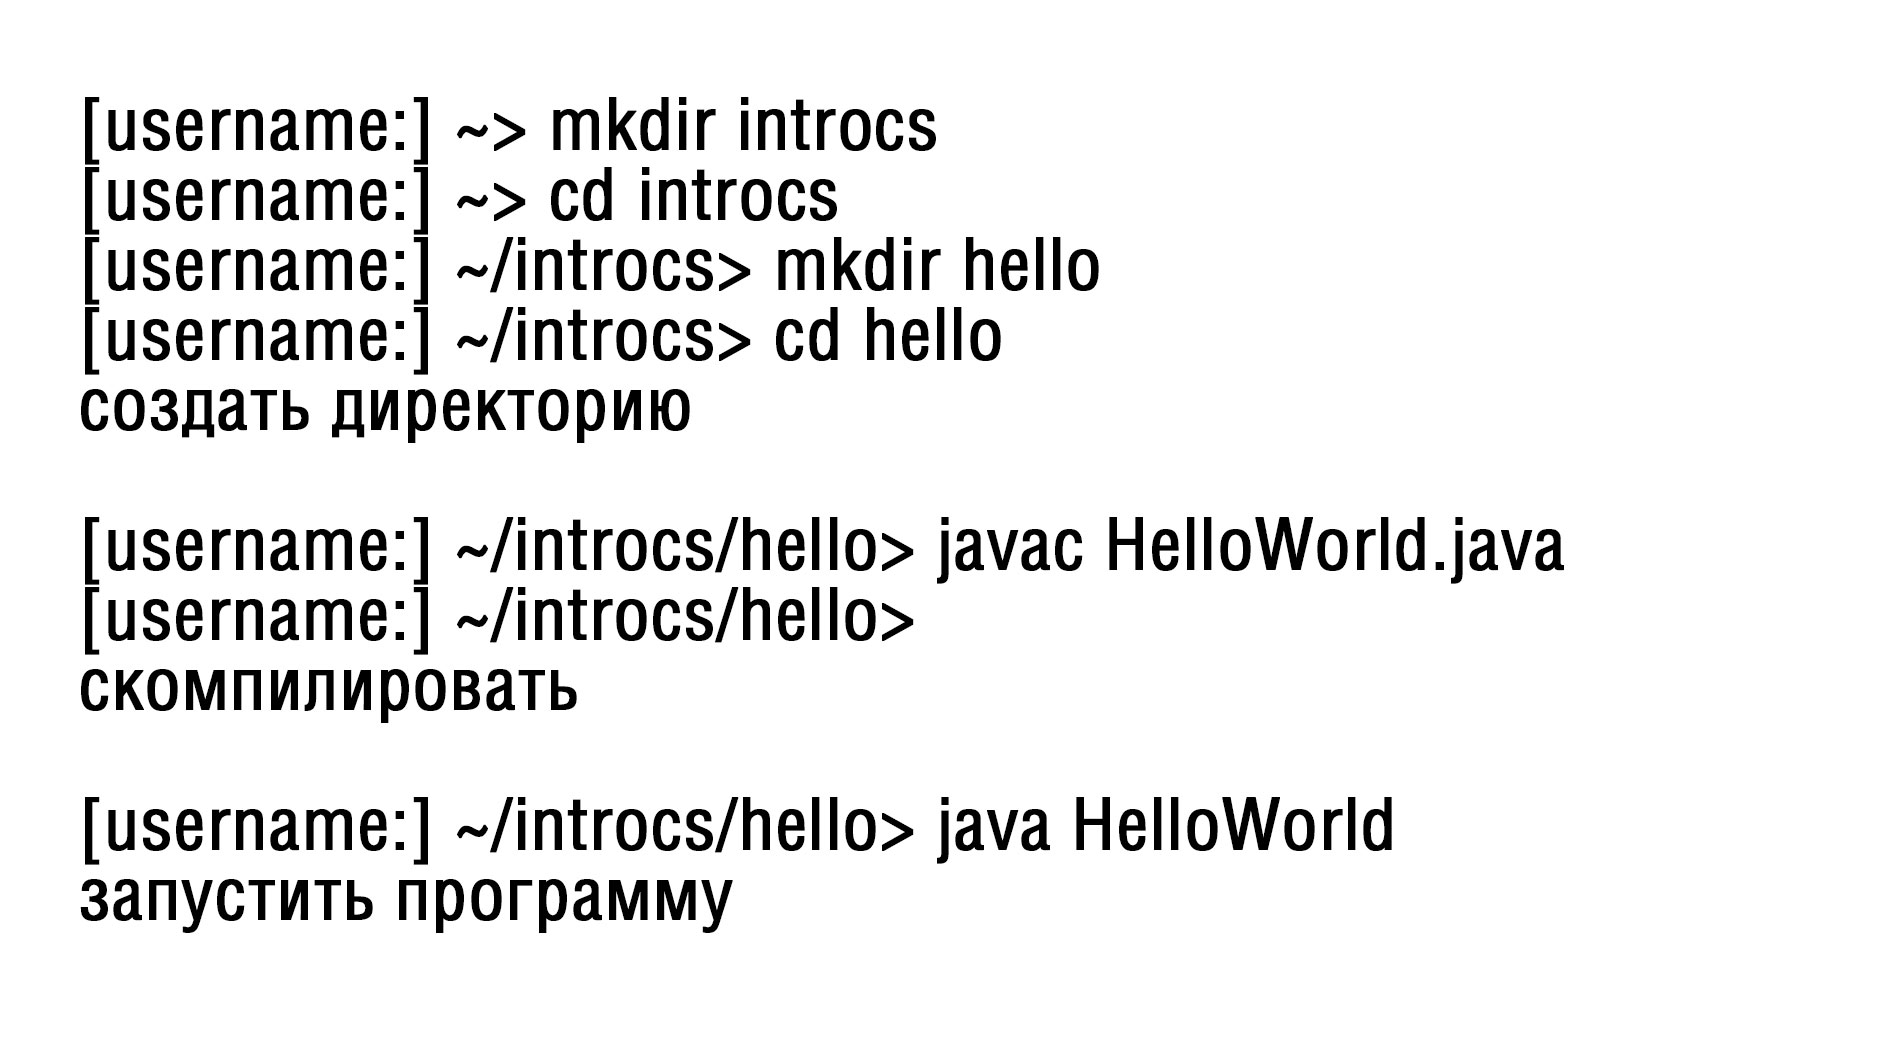 Команды для ввода в «Терминал» для создания директории, компиляции и запуска кода на Java